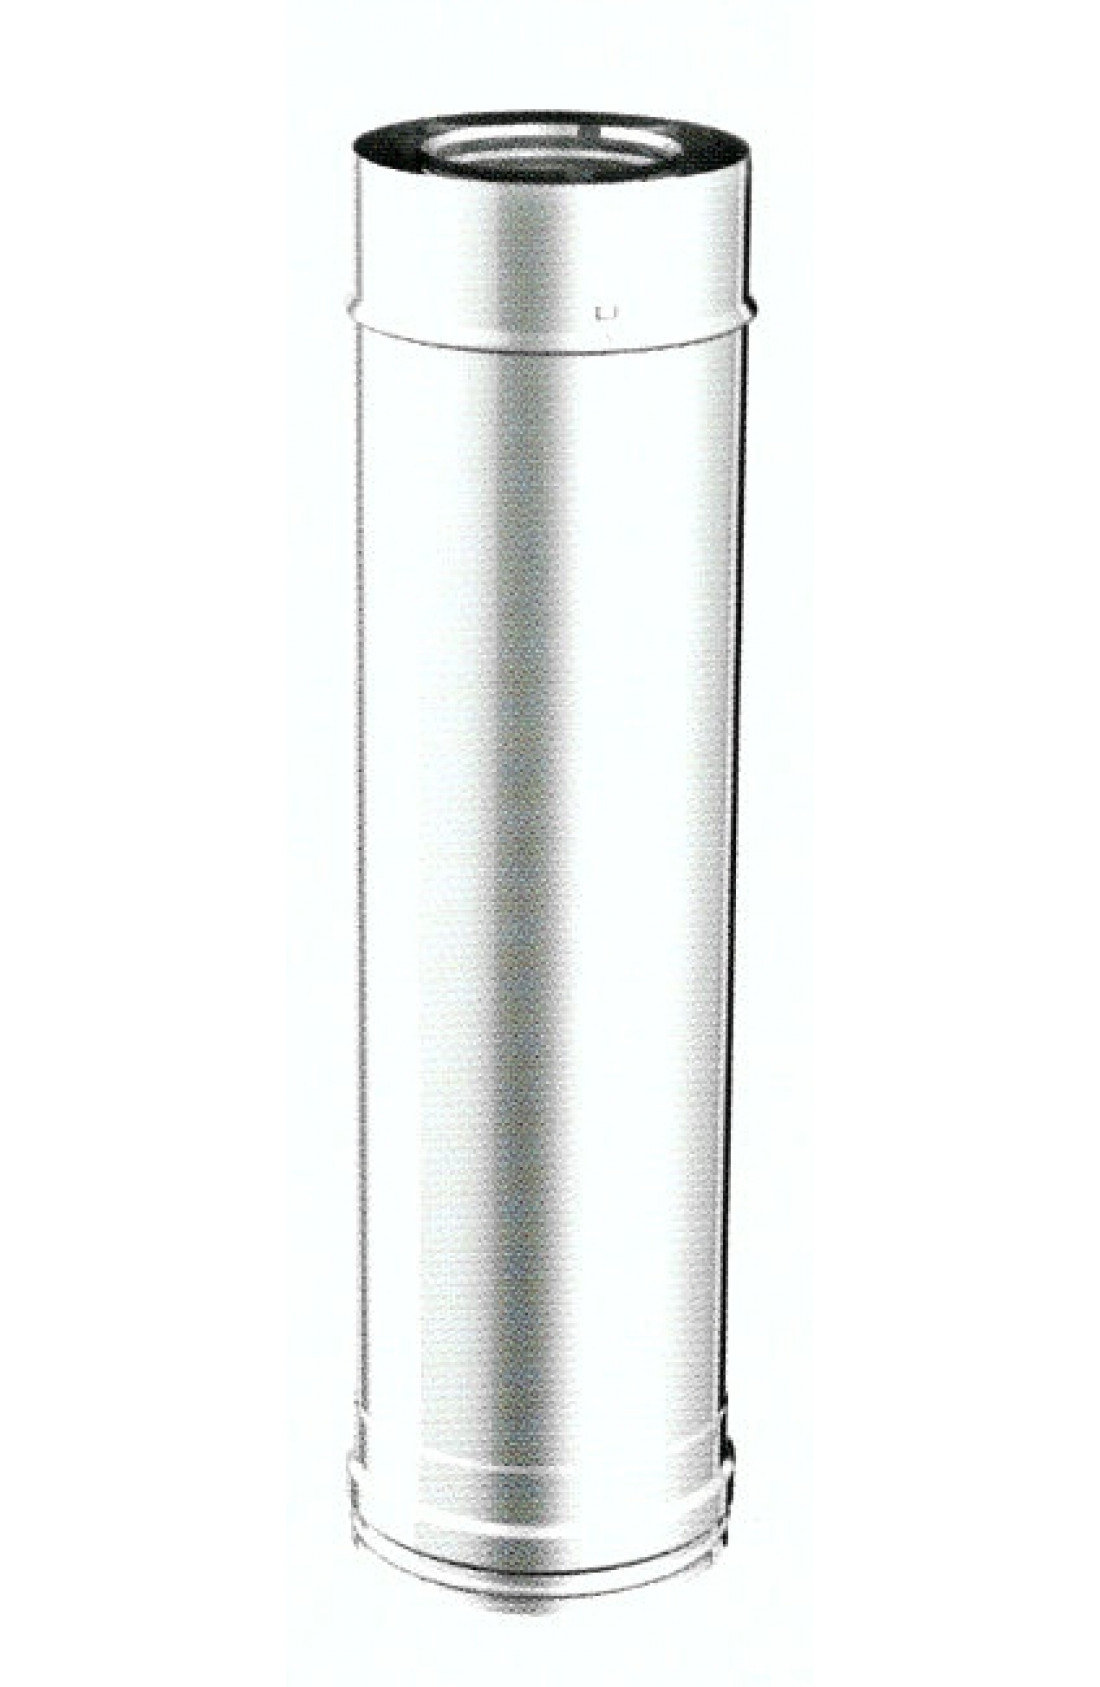 Tubo lineare in acciaio inox L500mm 